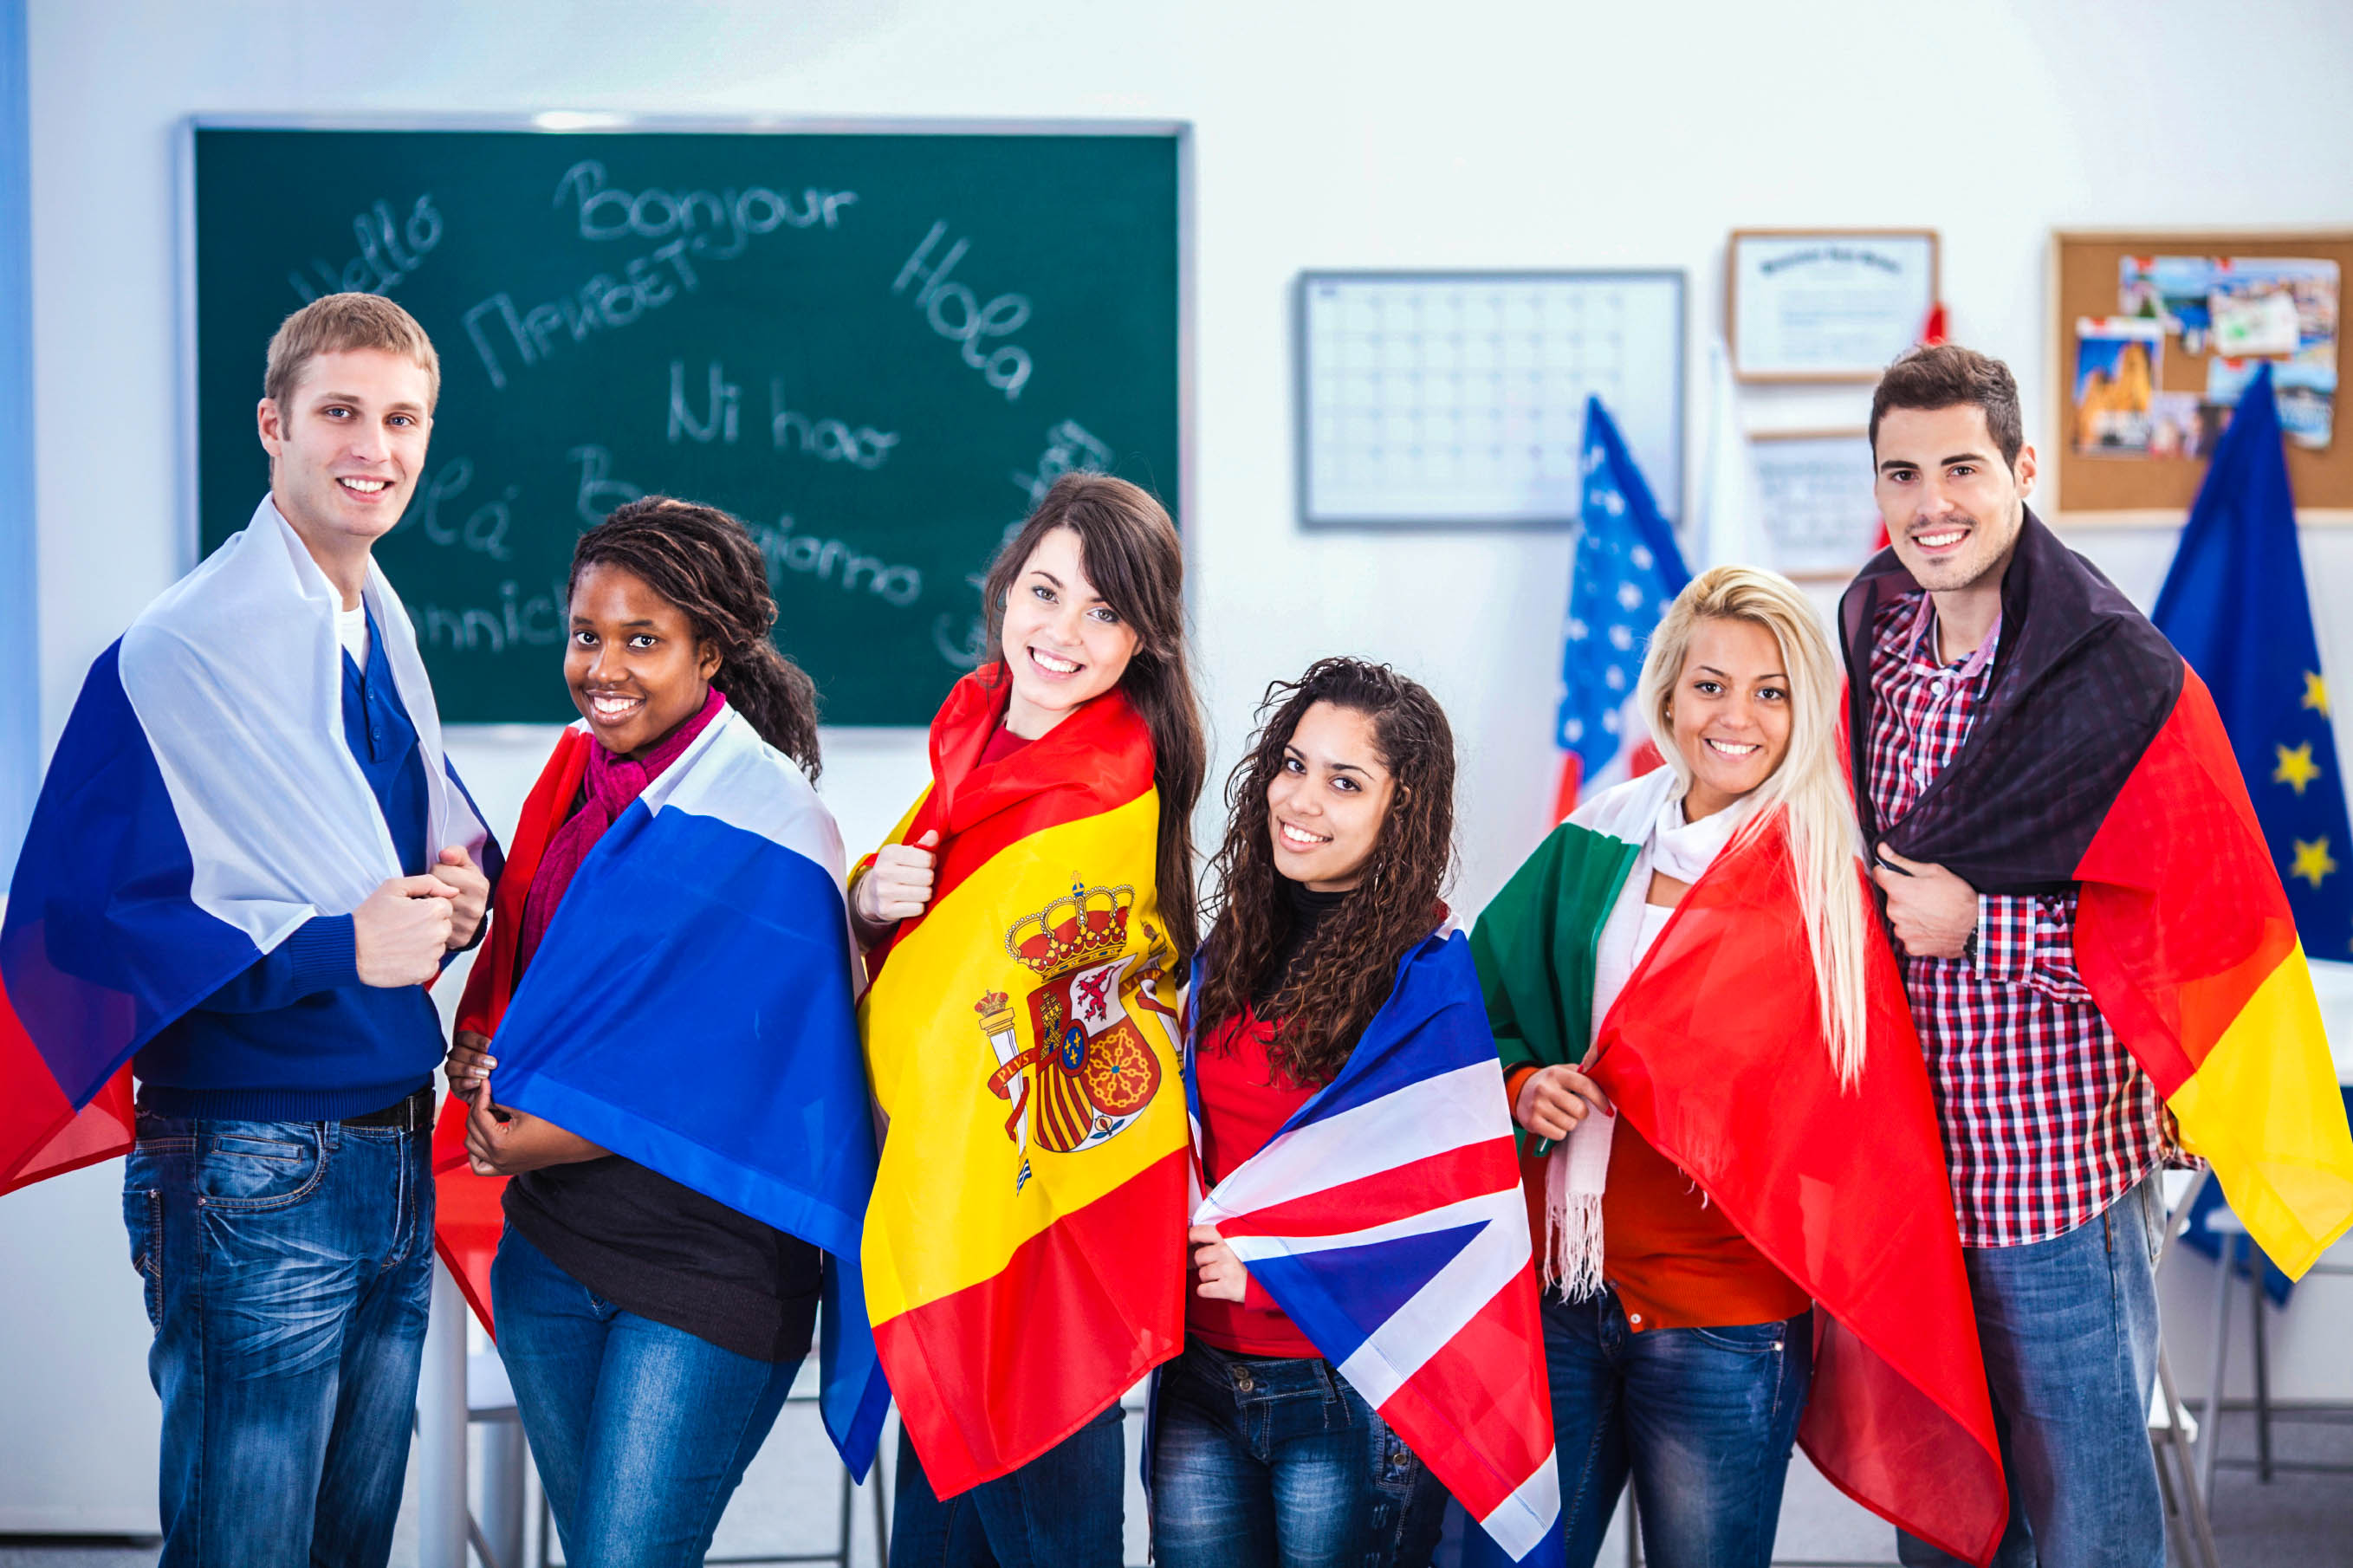 Образование и туризм организации. Студенты иностранцы. Российские студенты за рубежом. Иностранные студенты с флагами. Образование харубежом.